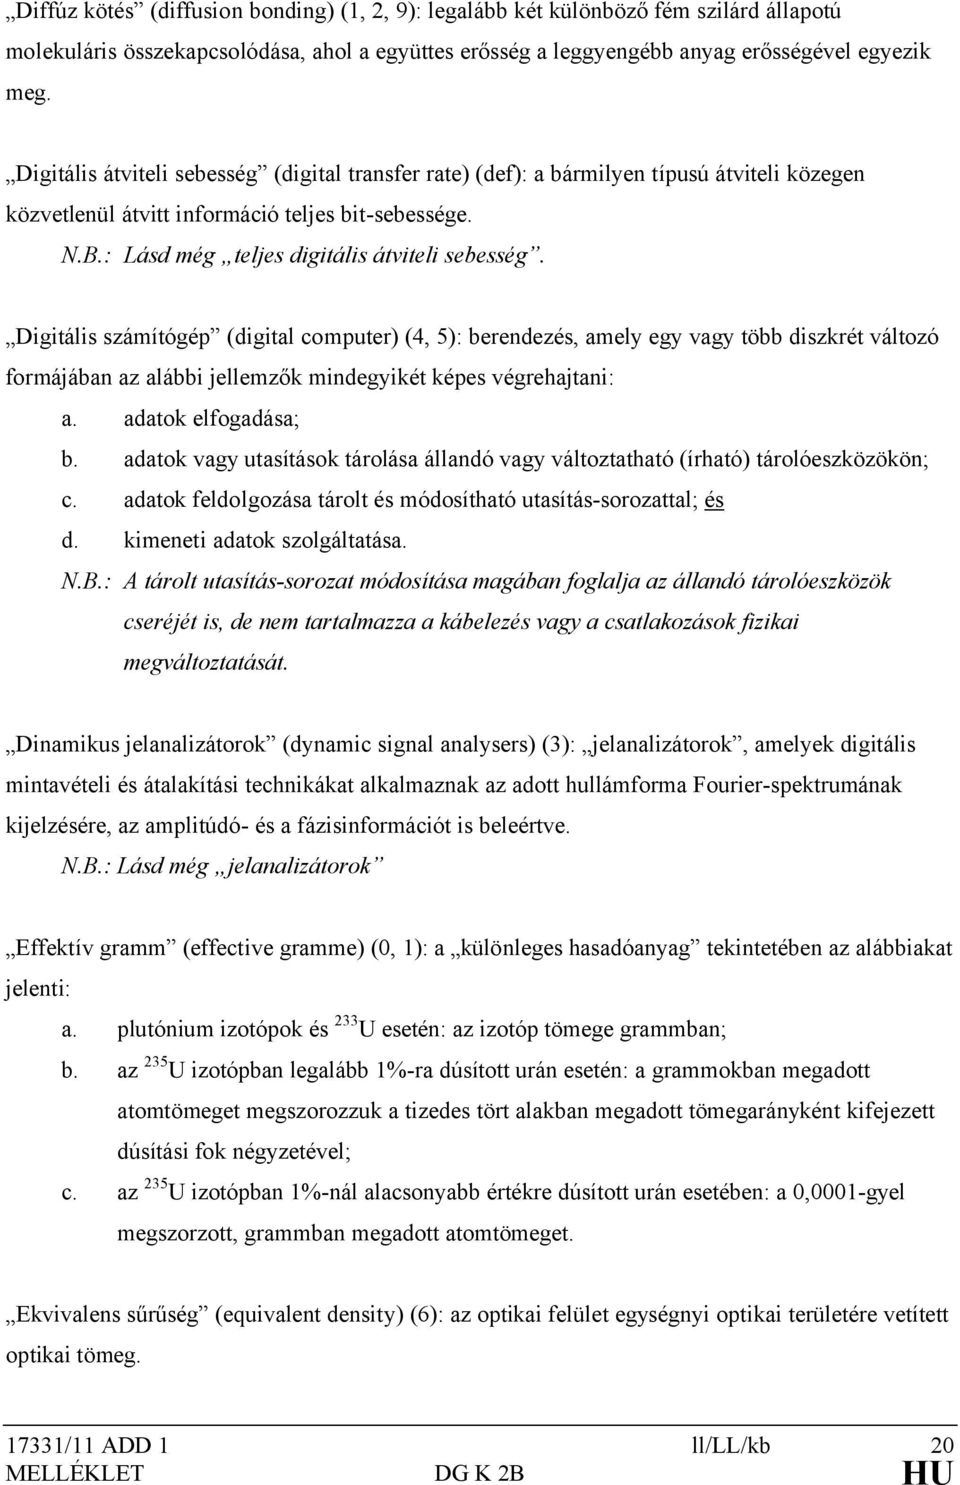 Digitális számítógép (digital computer) (4, 5): berendezés, amely egy vagy több diszkrét változó formájában az alábbi jellemzők mindegyikét képes végrehajtani: a. adatok elfogadása; b.